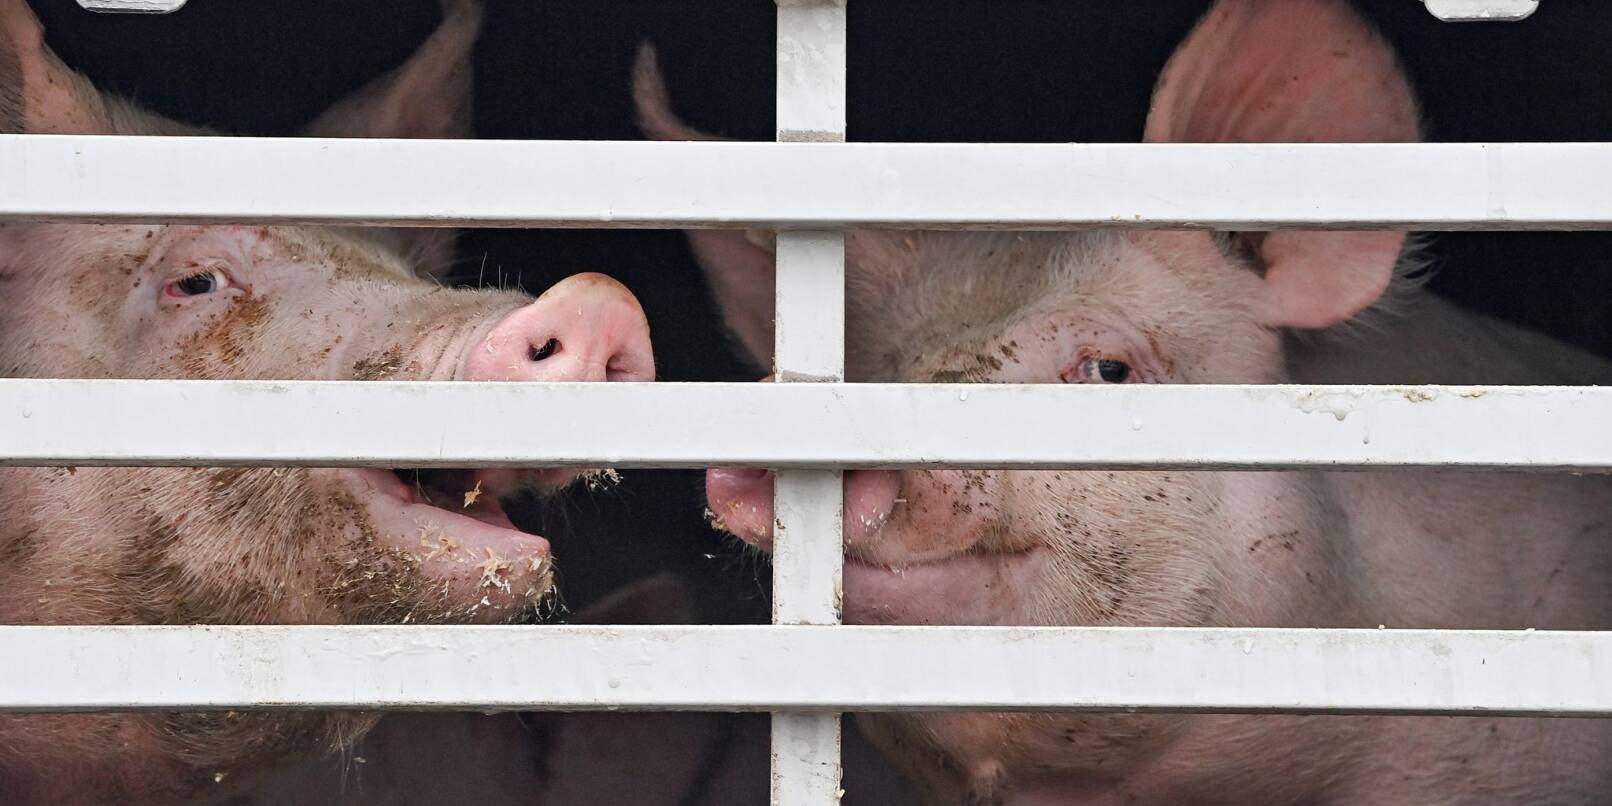 Mastschweine sind in einem Lkw für den Transport zum Schlachthof zu sehen.